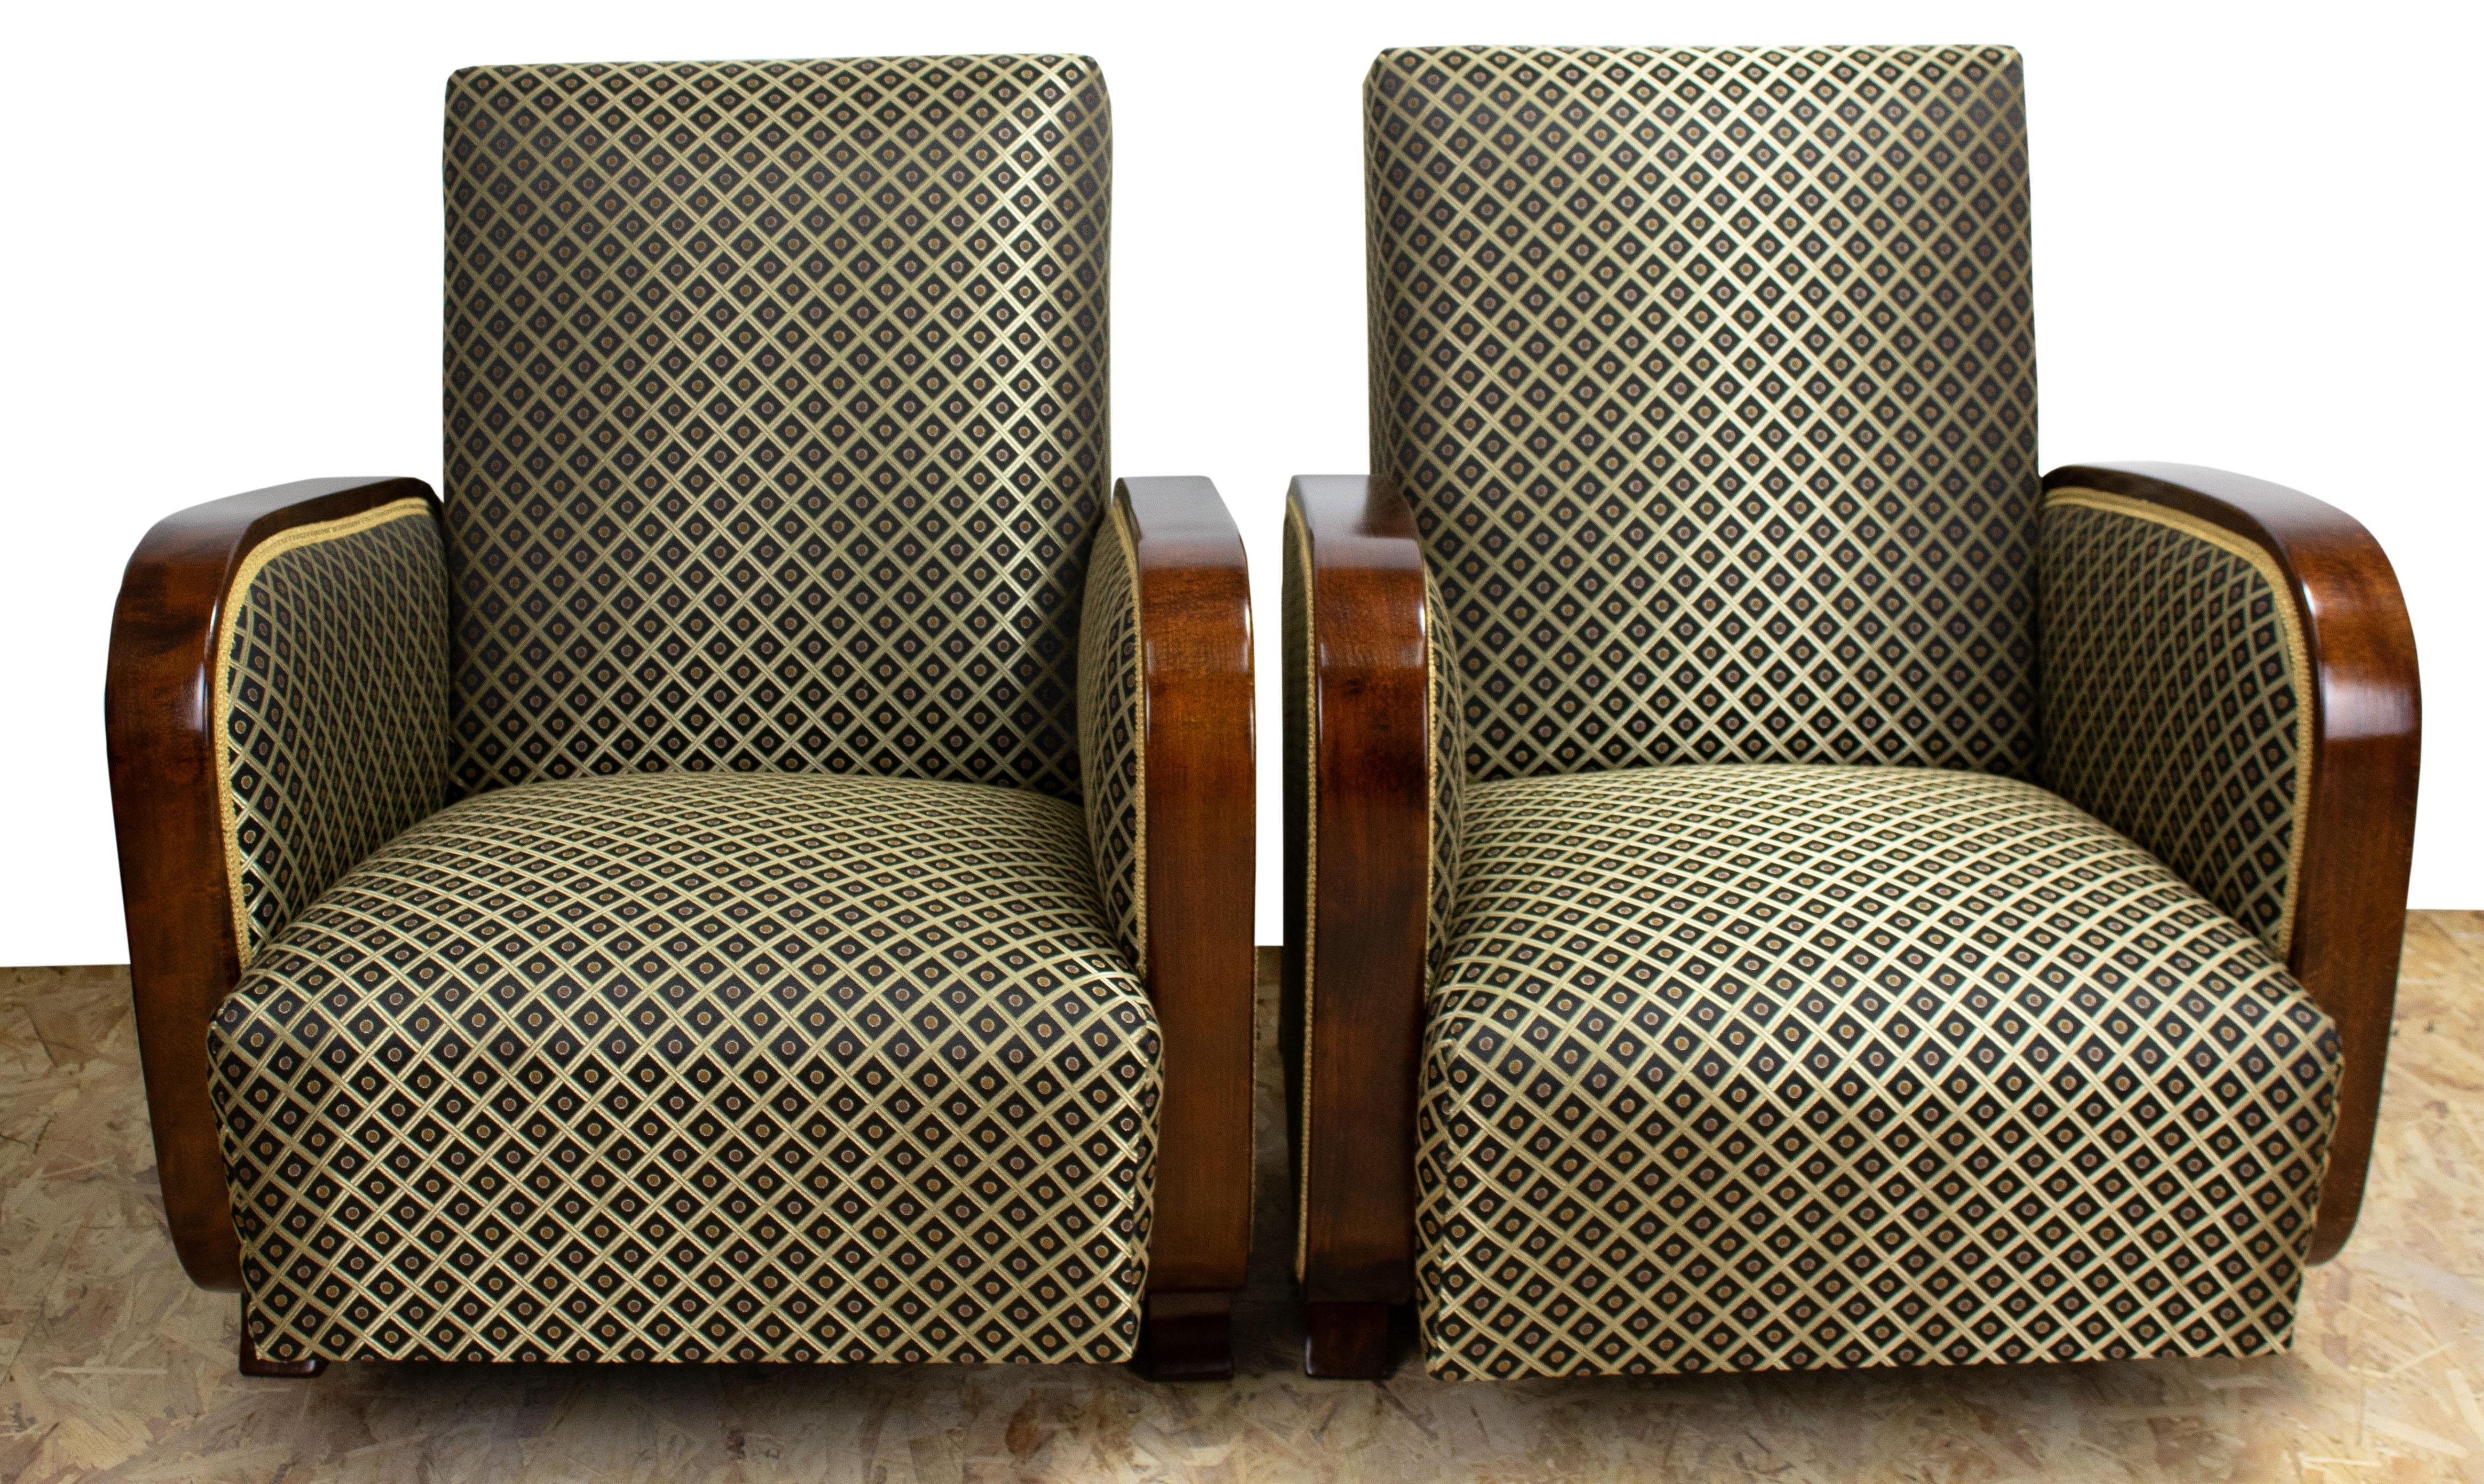 Die Sessel wurden speziell für das Büro eines österreichischen Bankdirektors angefertigt. Es wurden exklusive Stoffe verwendet. Die Holzteile und die Polsterung wurden unter Verwendung zeitgemäßer Fertigungstechniken restauriert. Die Sessel bieten